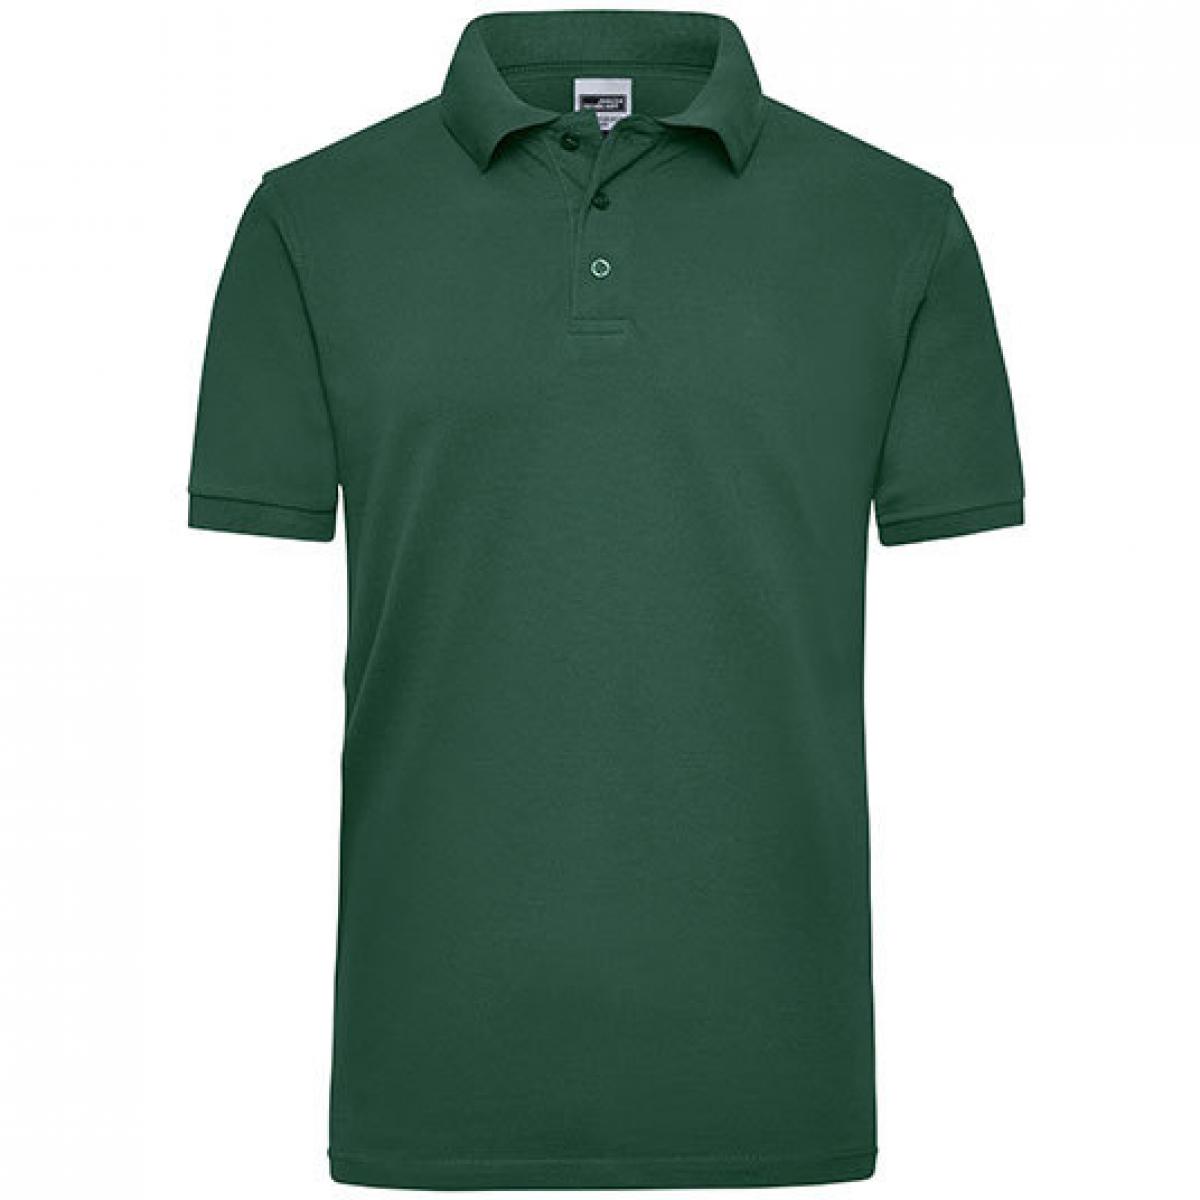 Hersteller: James+Nicholson Herstellernummer: JN 801 Artikelbezeichnung: Workwear Herren Poloshirt Men Farbe: Dark Green